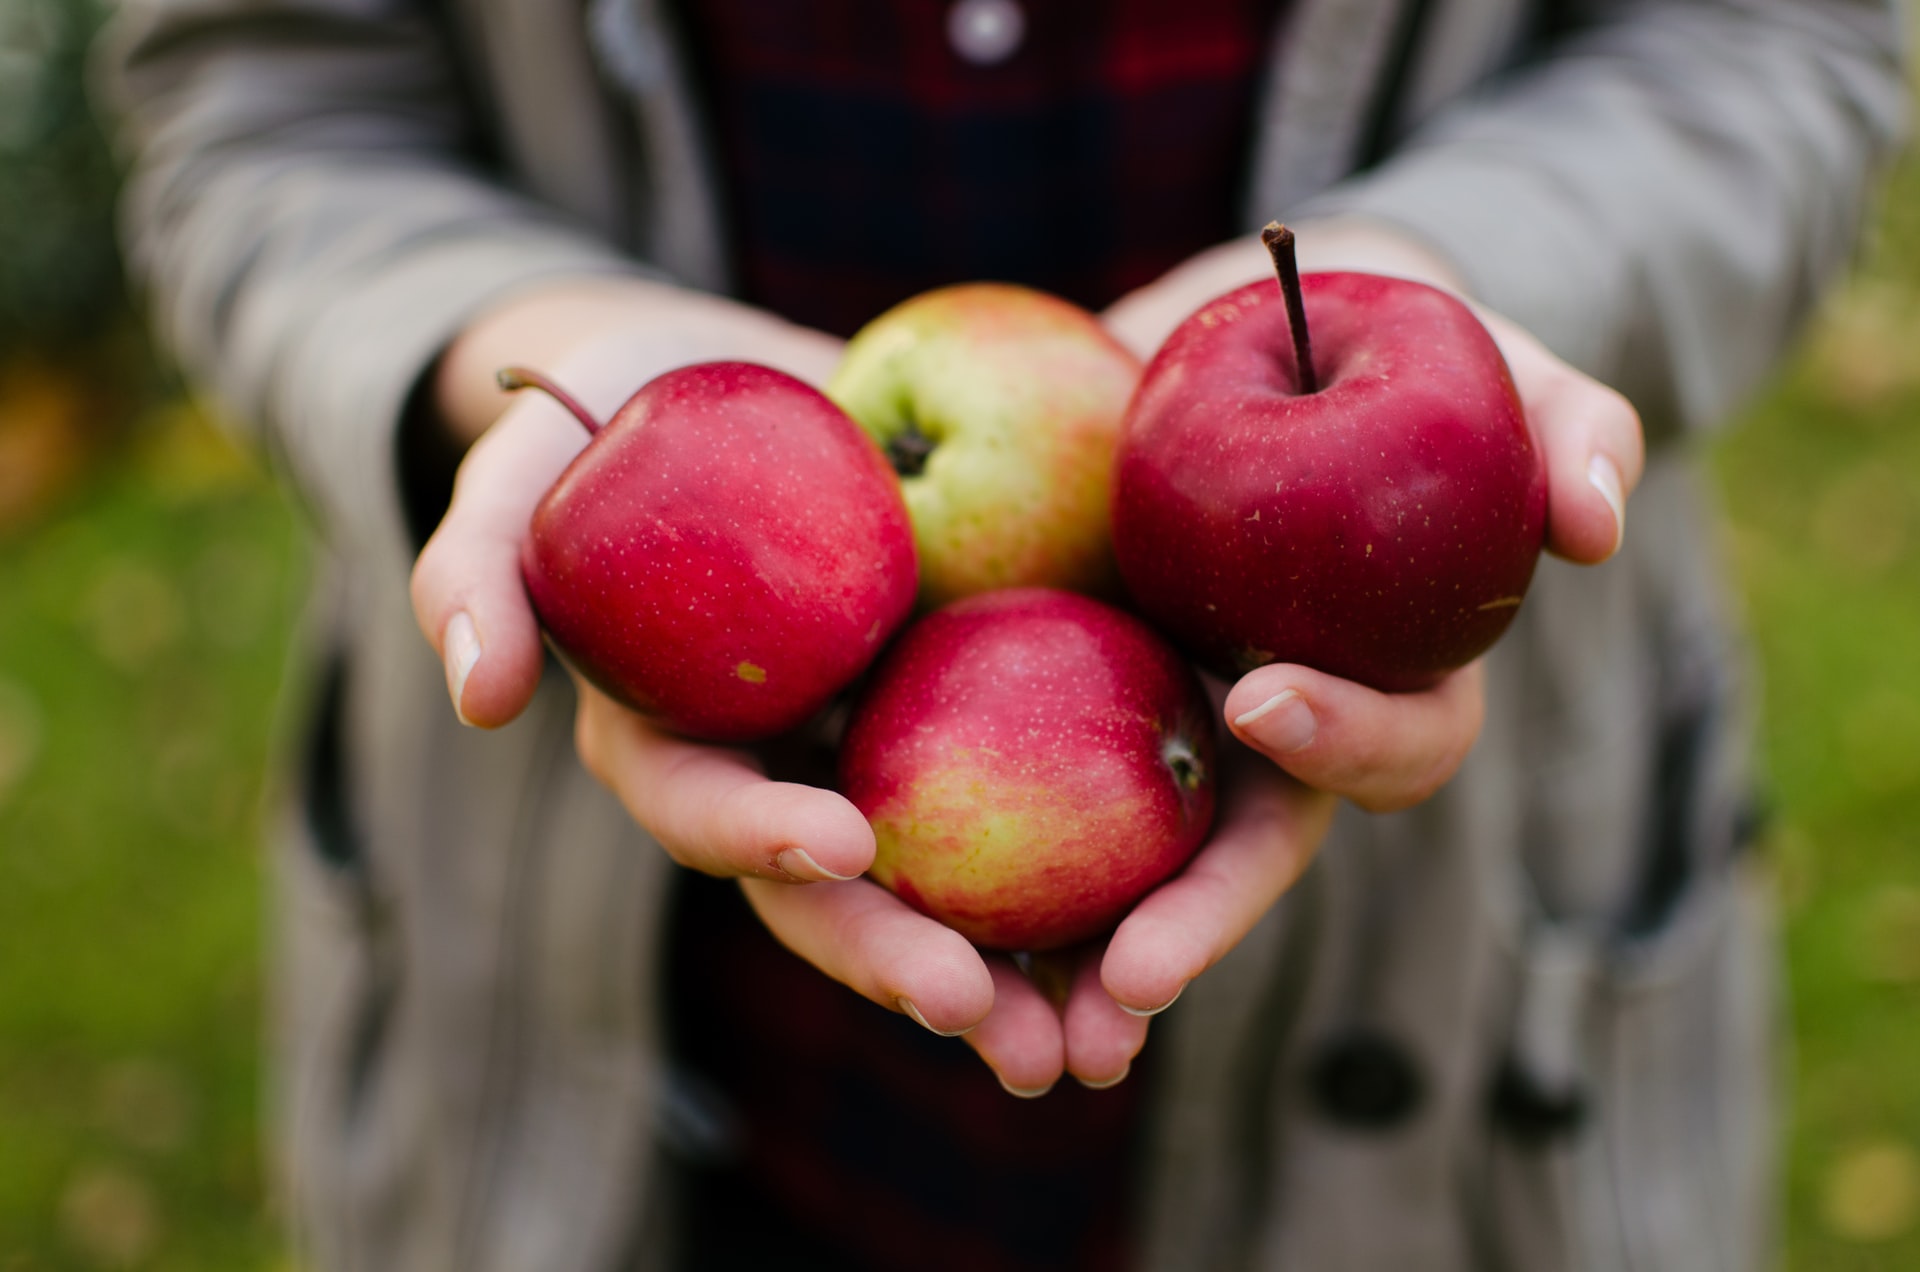 Rechtenvrije foto van iemand met vier appels door Aaron Blanco Tejedor via Unsplash.